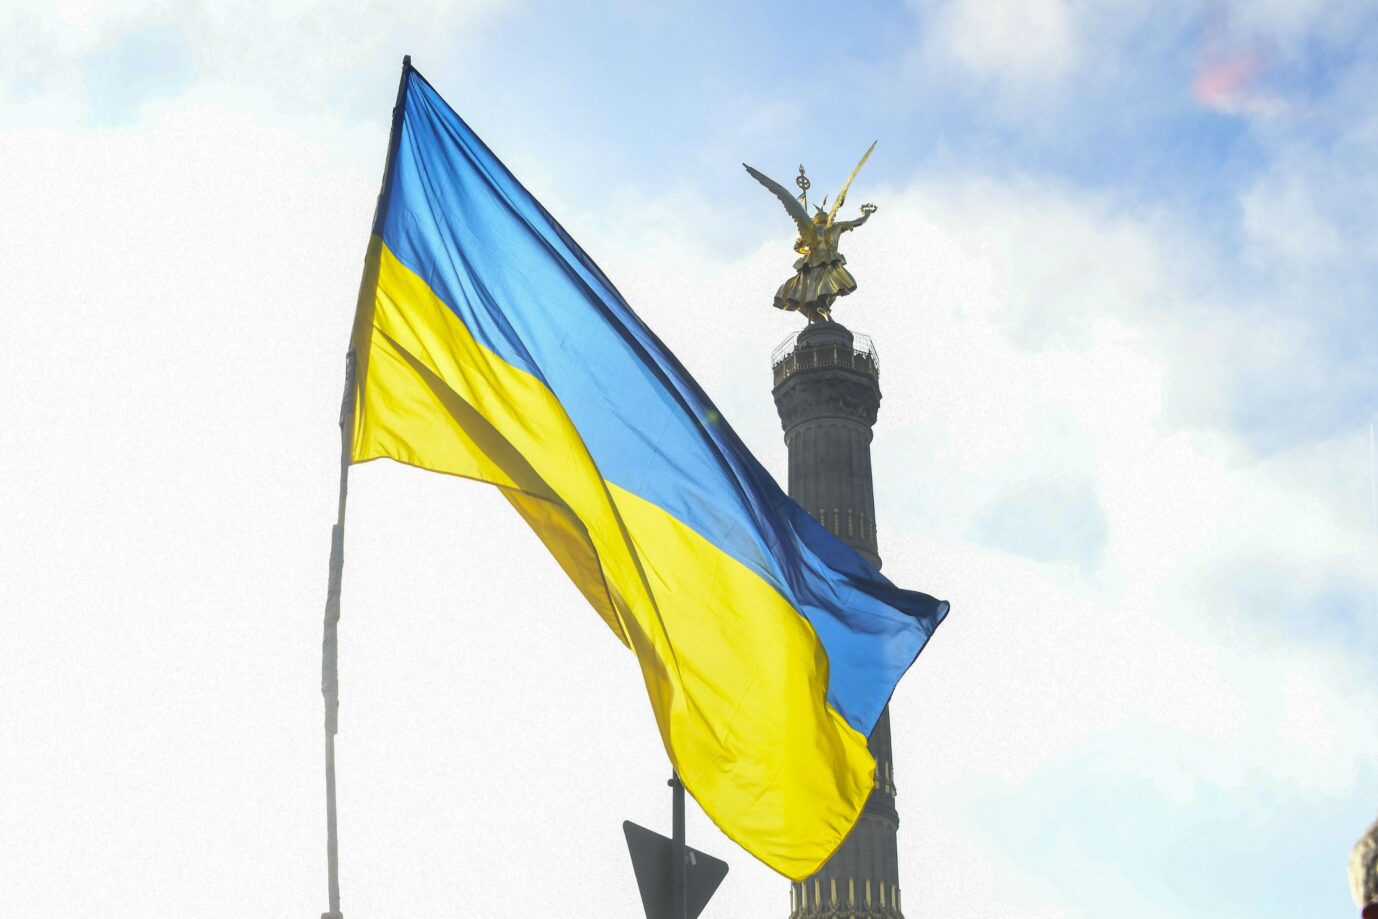 Neuer Feiertag? Am 24. August könnten überall in Berlin – nicht nur an der Siegessäule – ukrainische Fahnen wehen. Foto: picture alliance